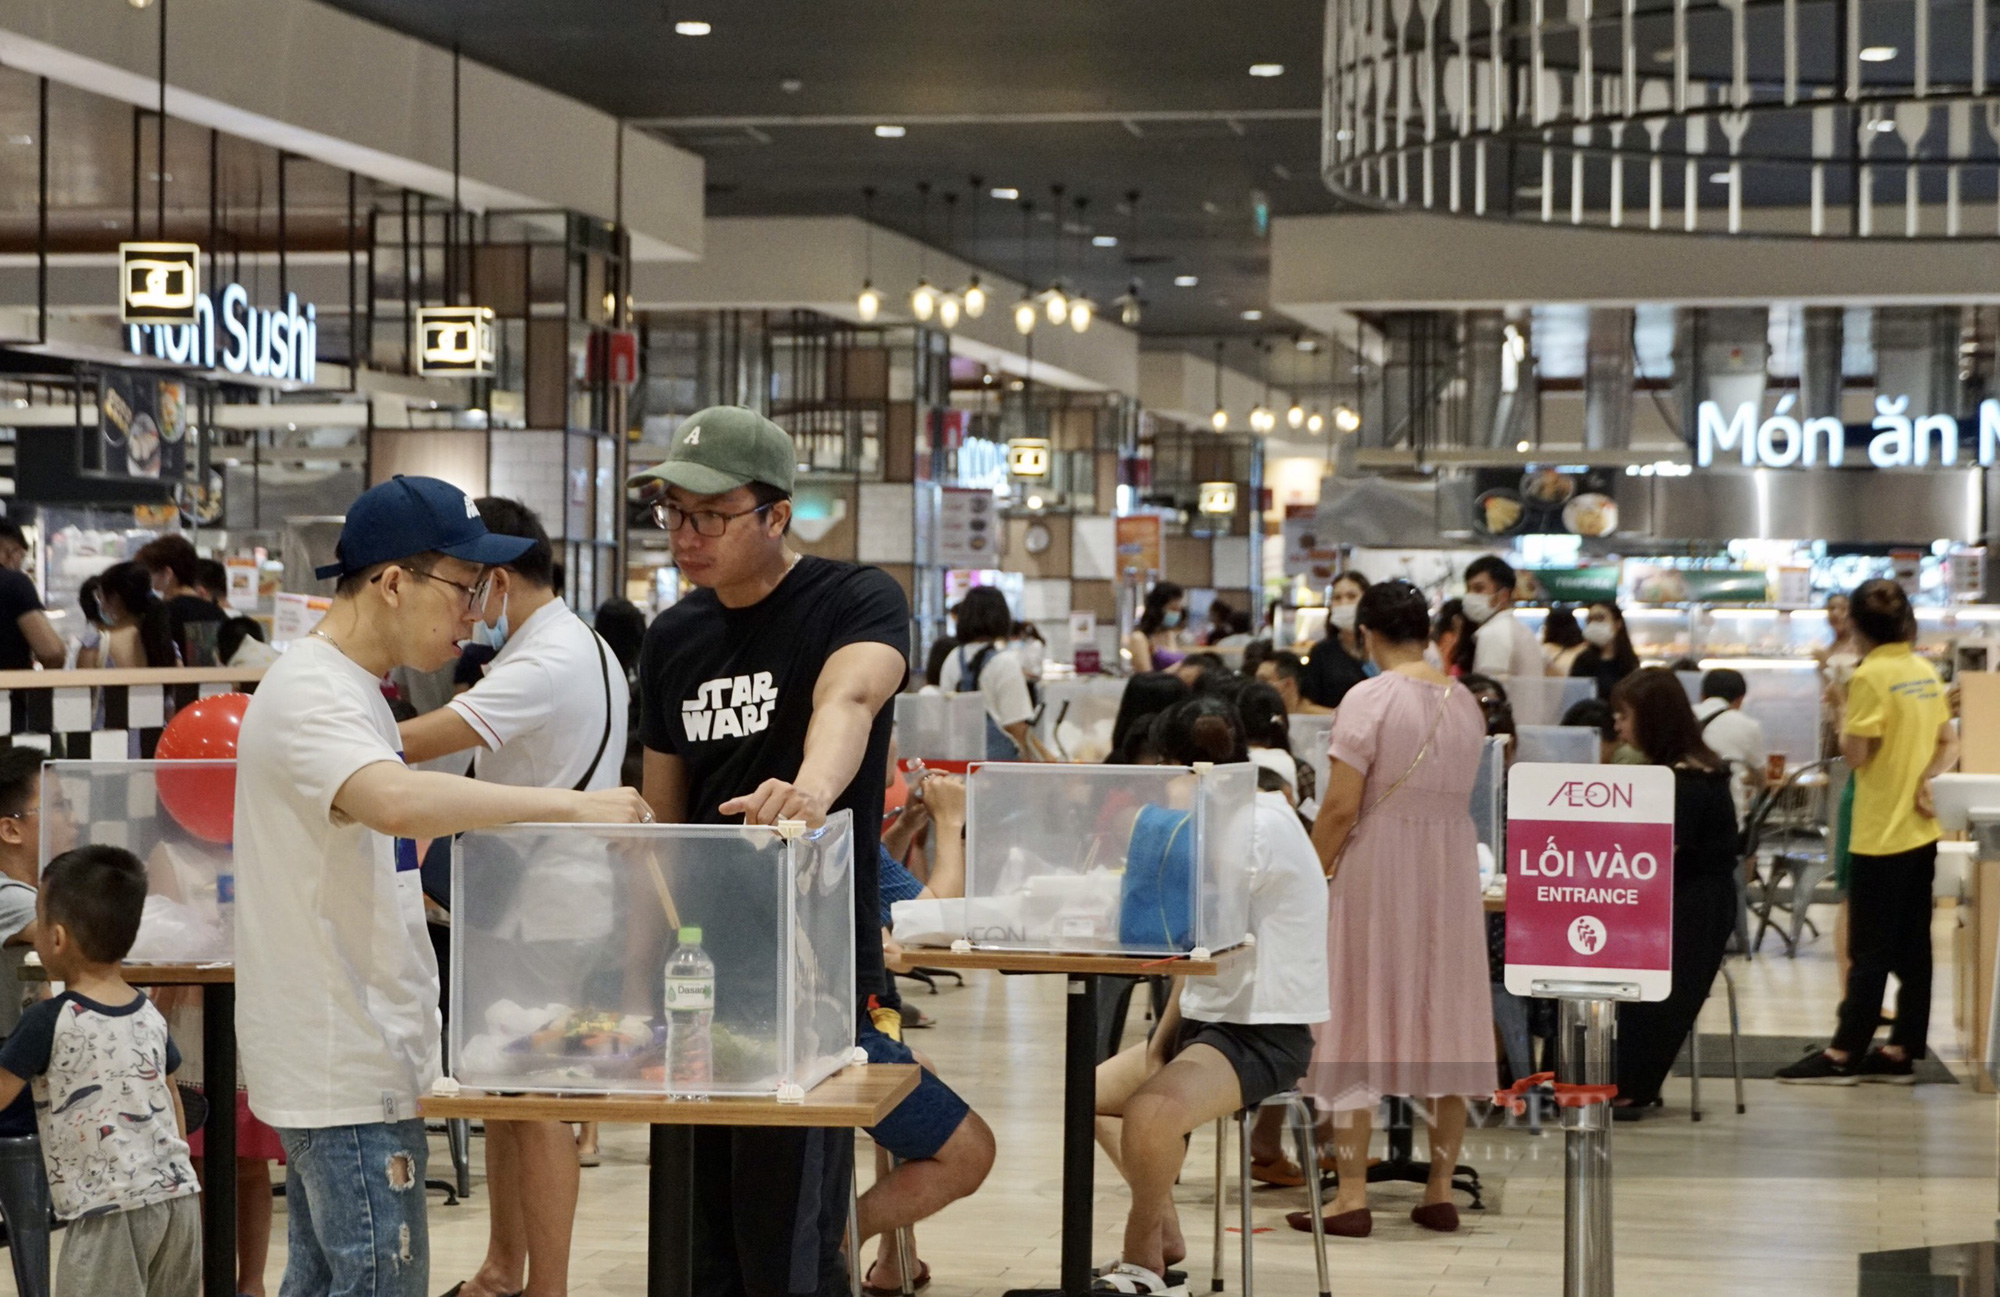 Hà Nội: Trung tâm thương mại, siêu thị vẫn đông nghịt người bất chấp dịch COVID-19 - Ảnh 5.